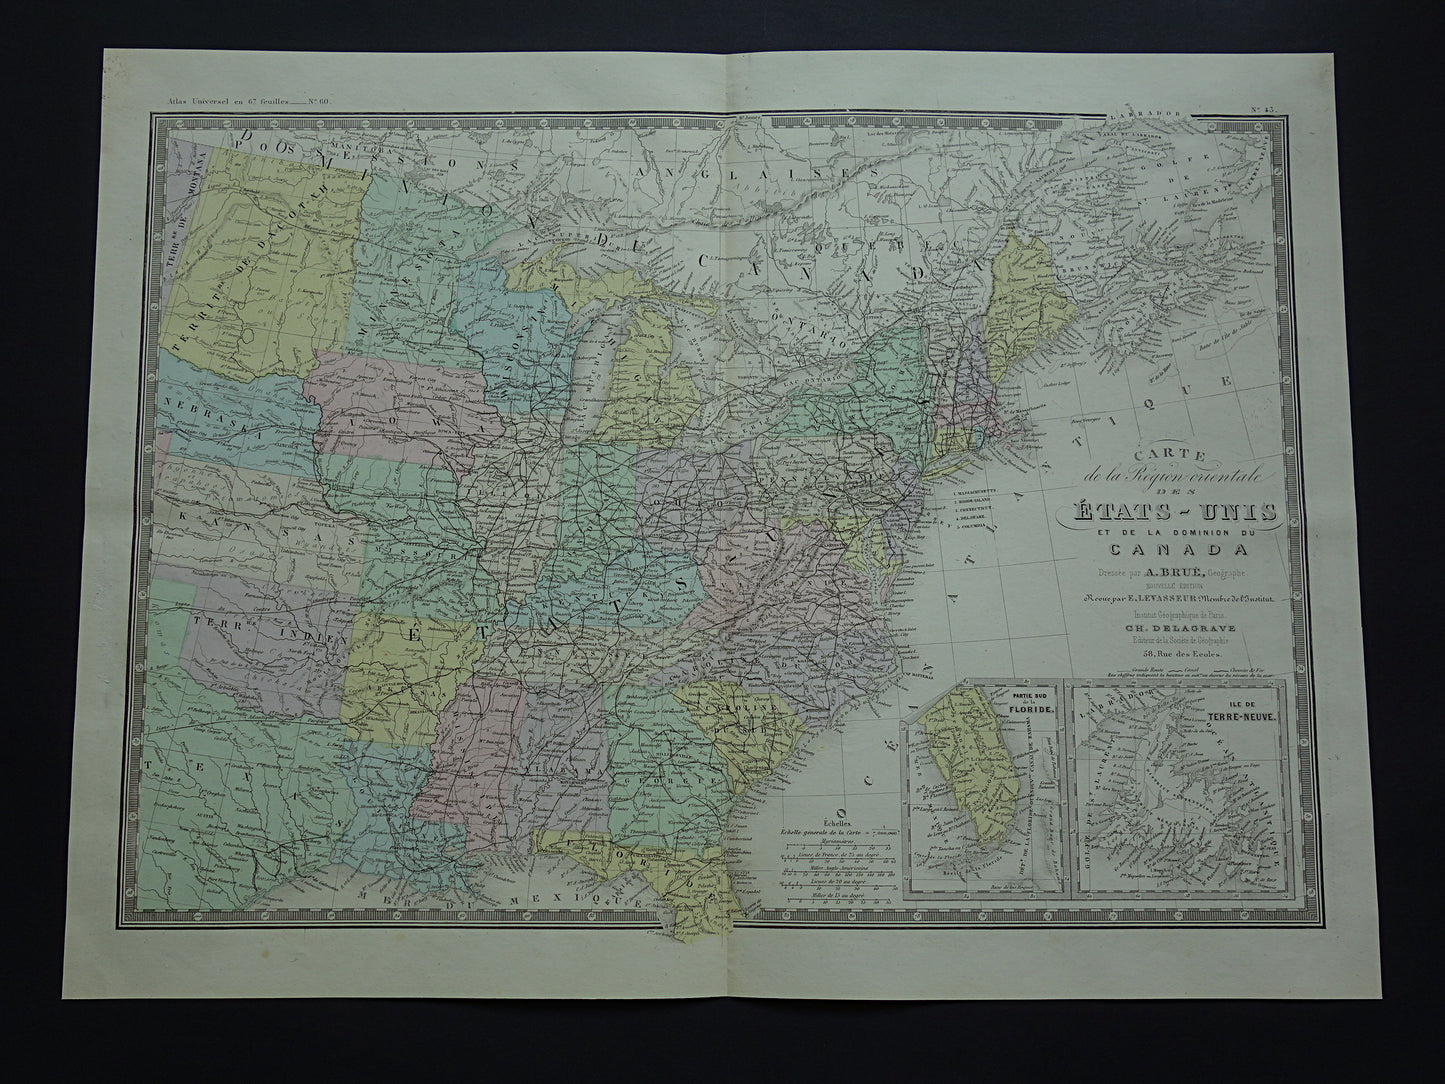 VERENIGDE STATEN antieke kaart van de VS 140+ jaar oude landkaart van Oostkust Amerika USA originele vintage historische Kaarten